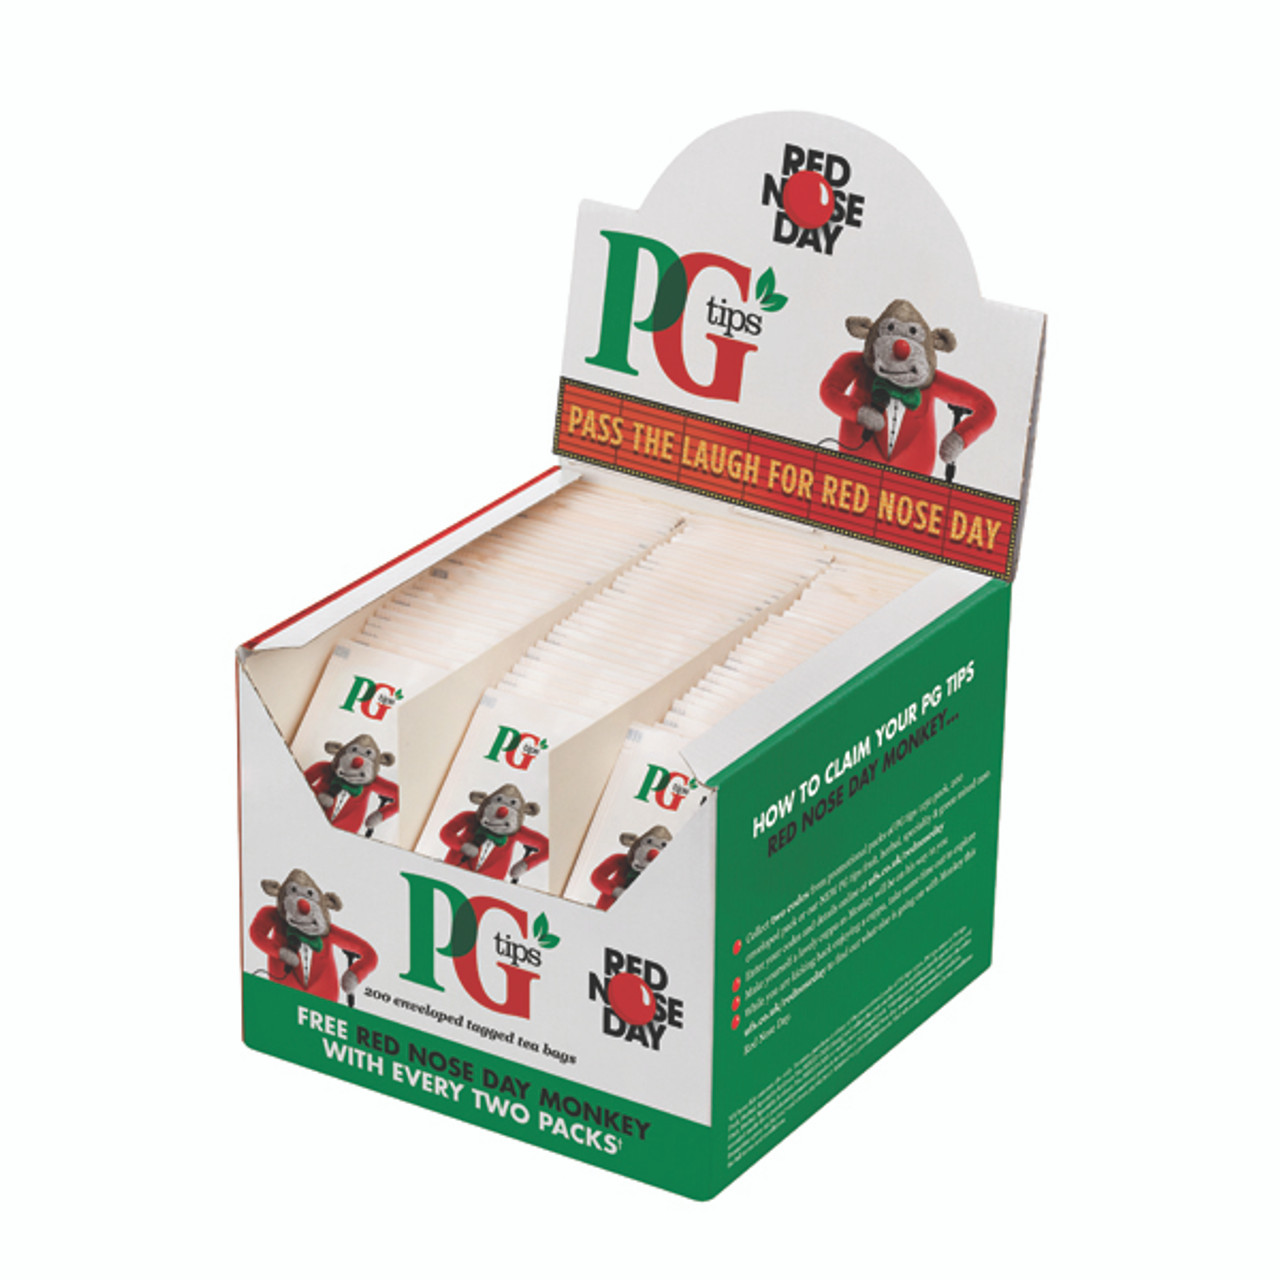 PG Tips Tea Bags - Bulk Supermarket